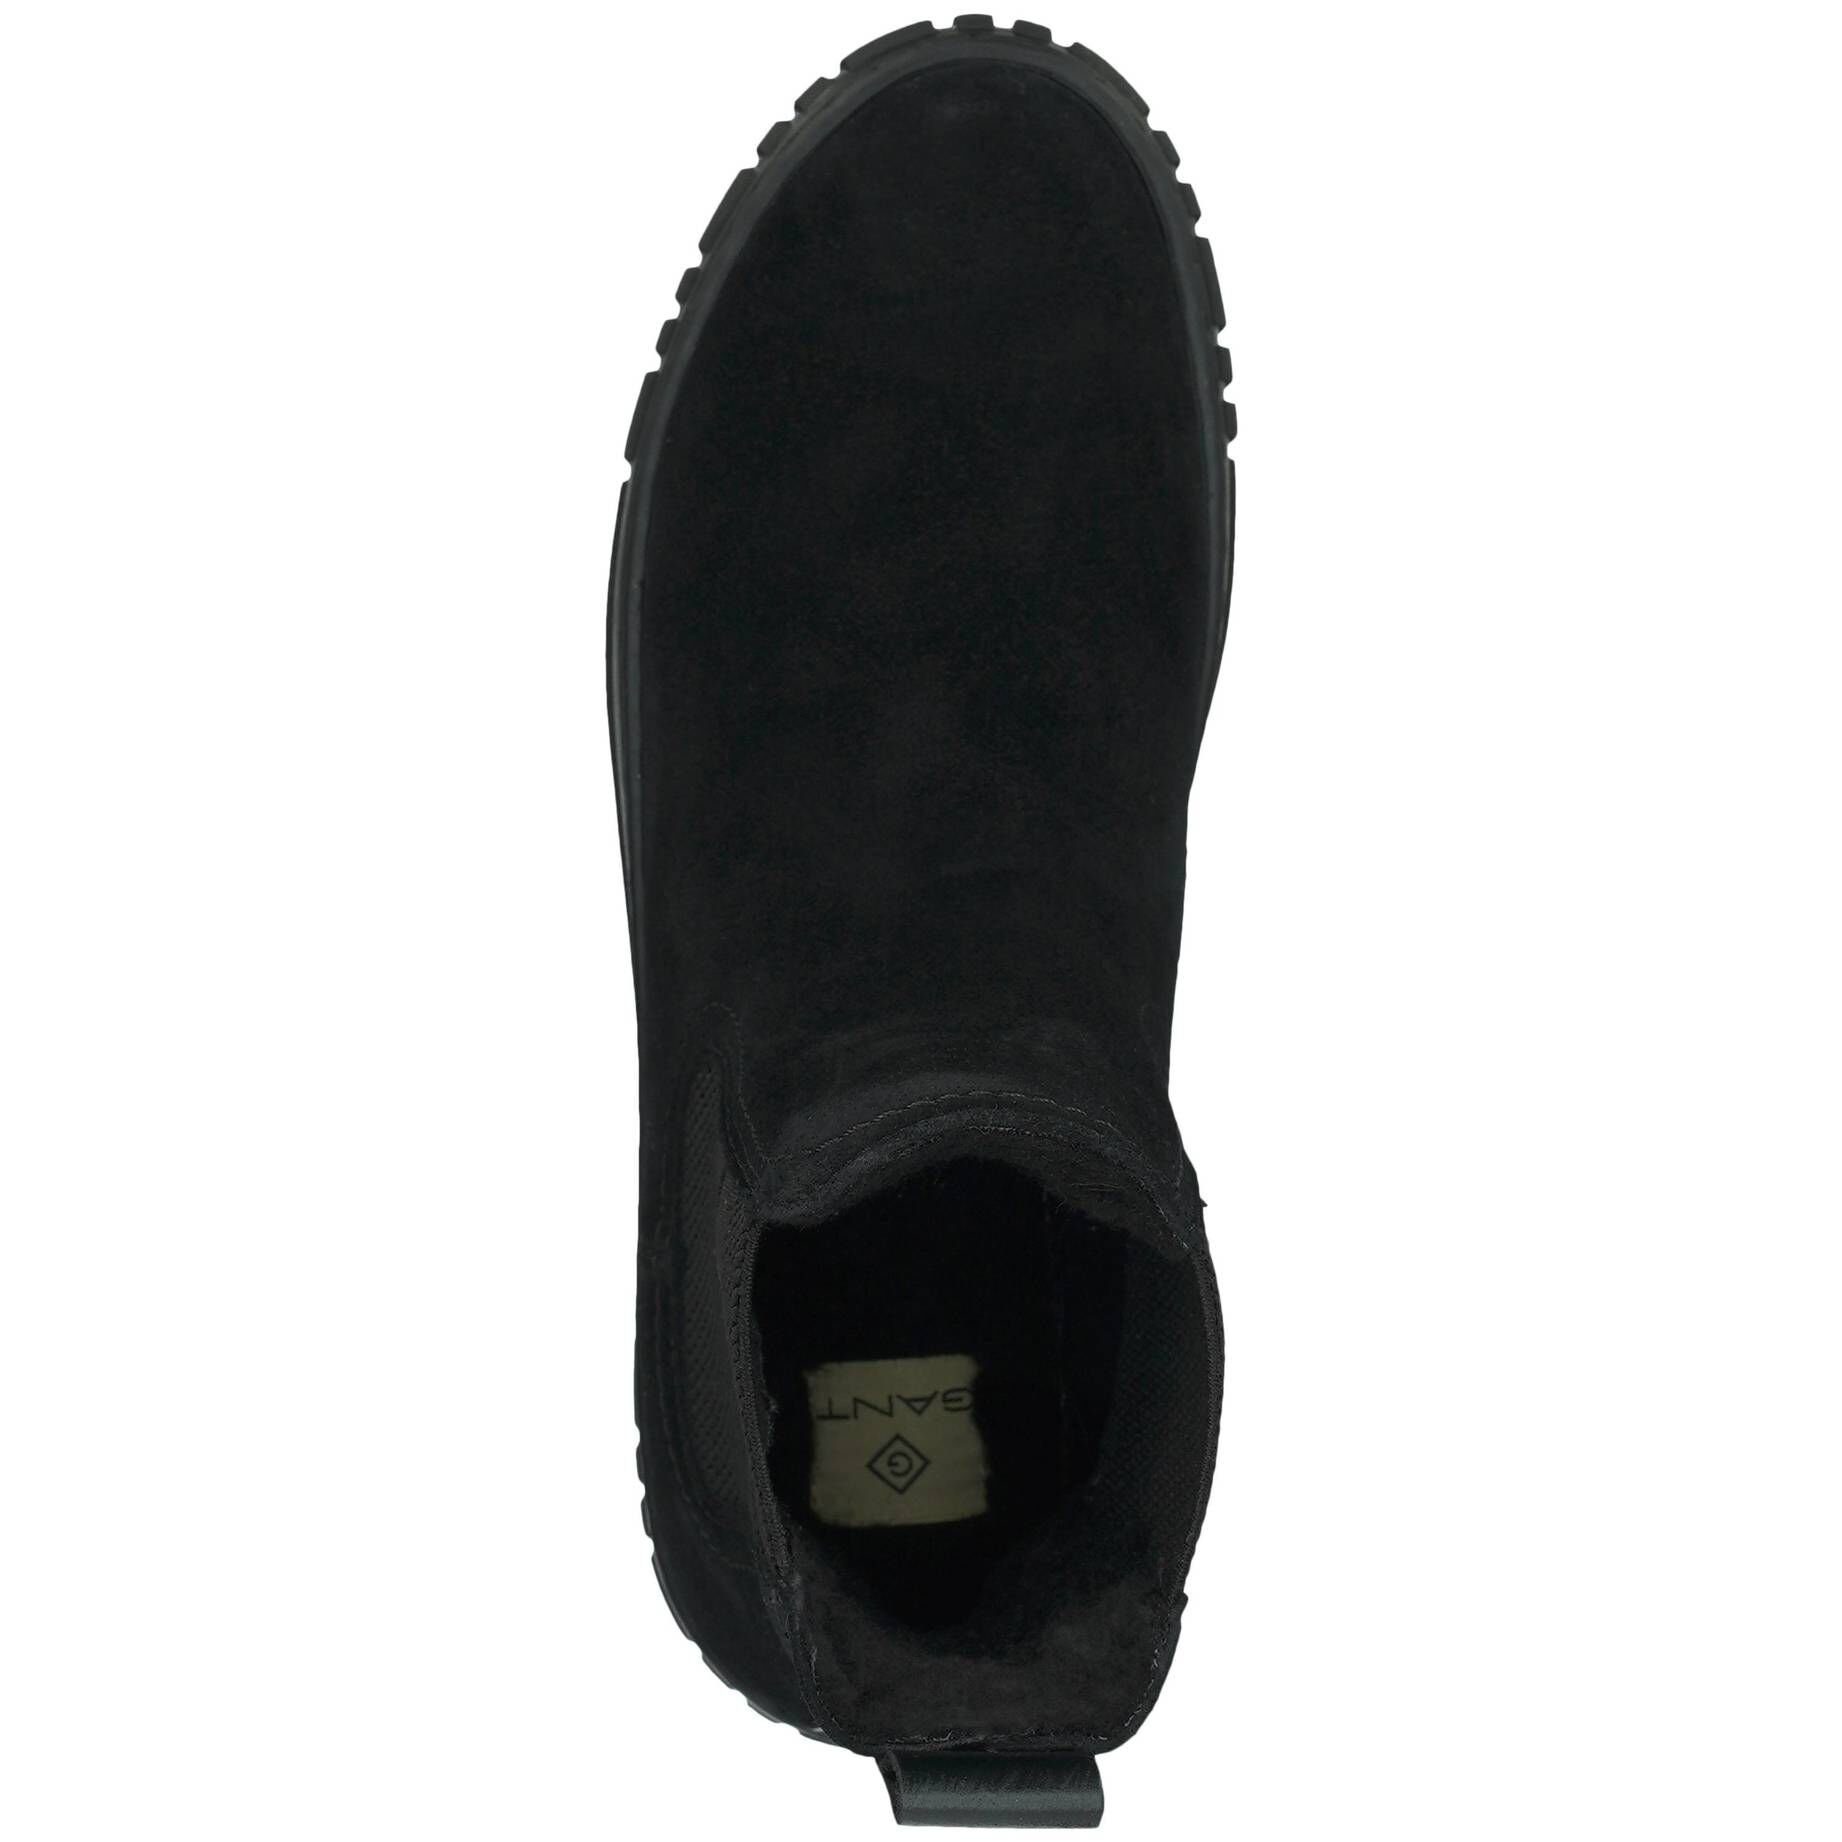 (15) SNOWMONT Damen Stiefel schwarz Chelsea Boots Gant